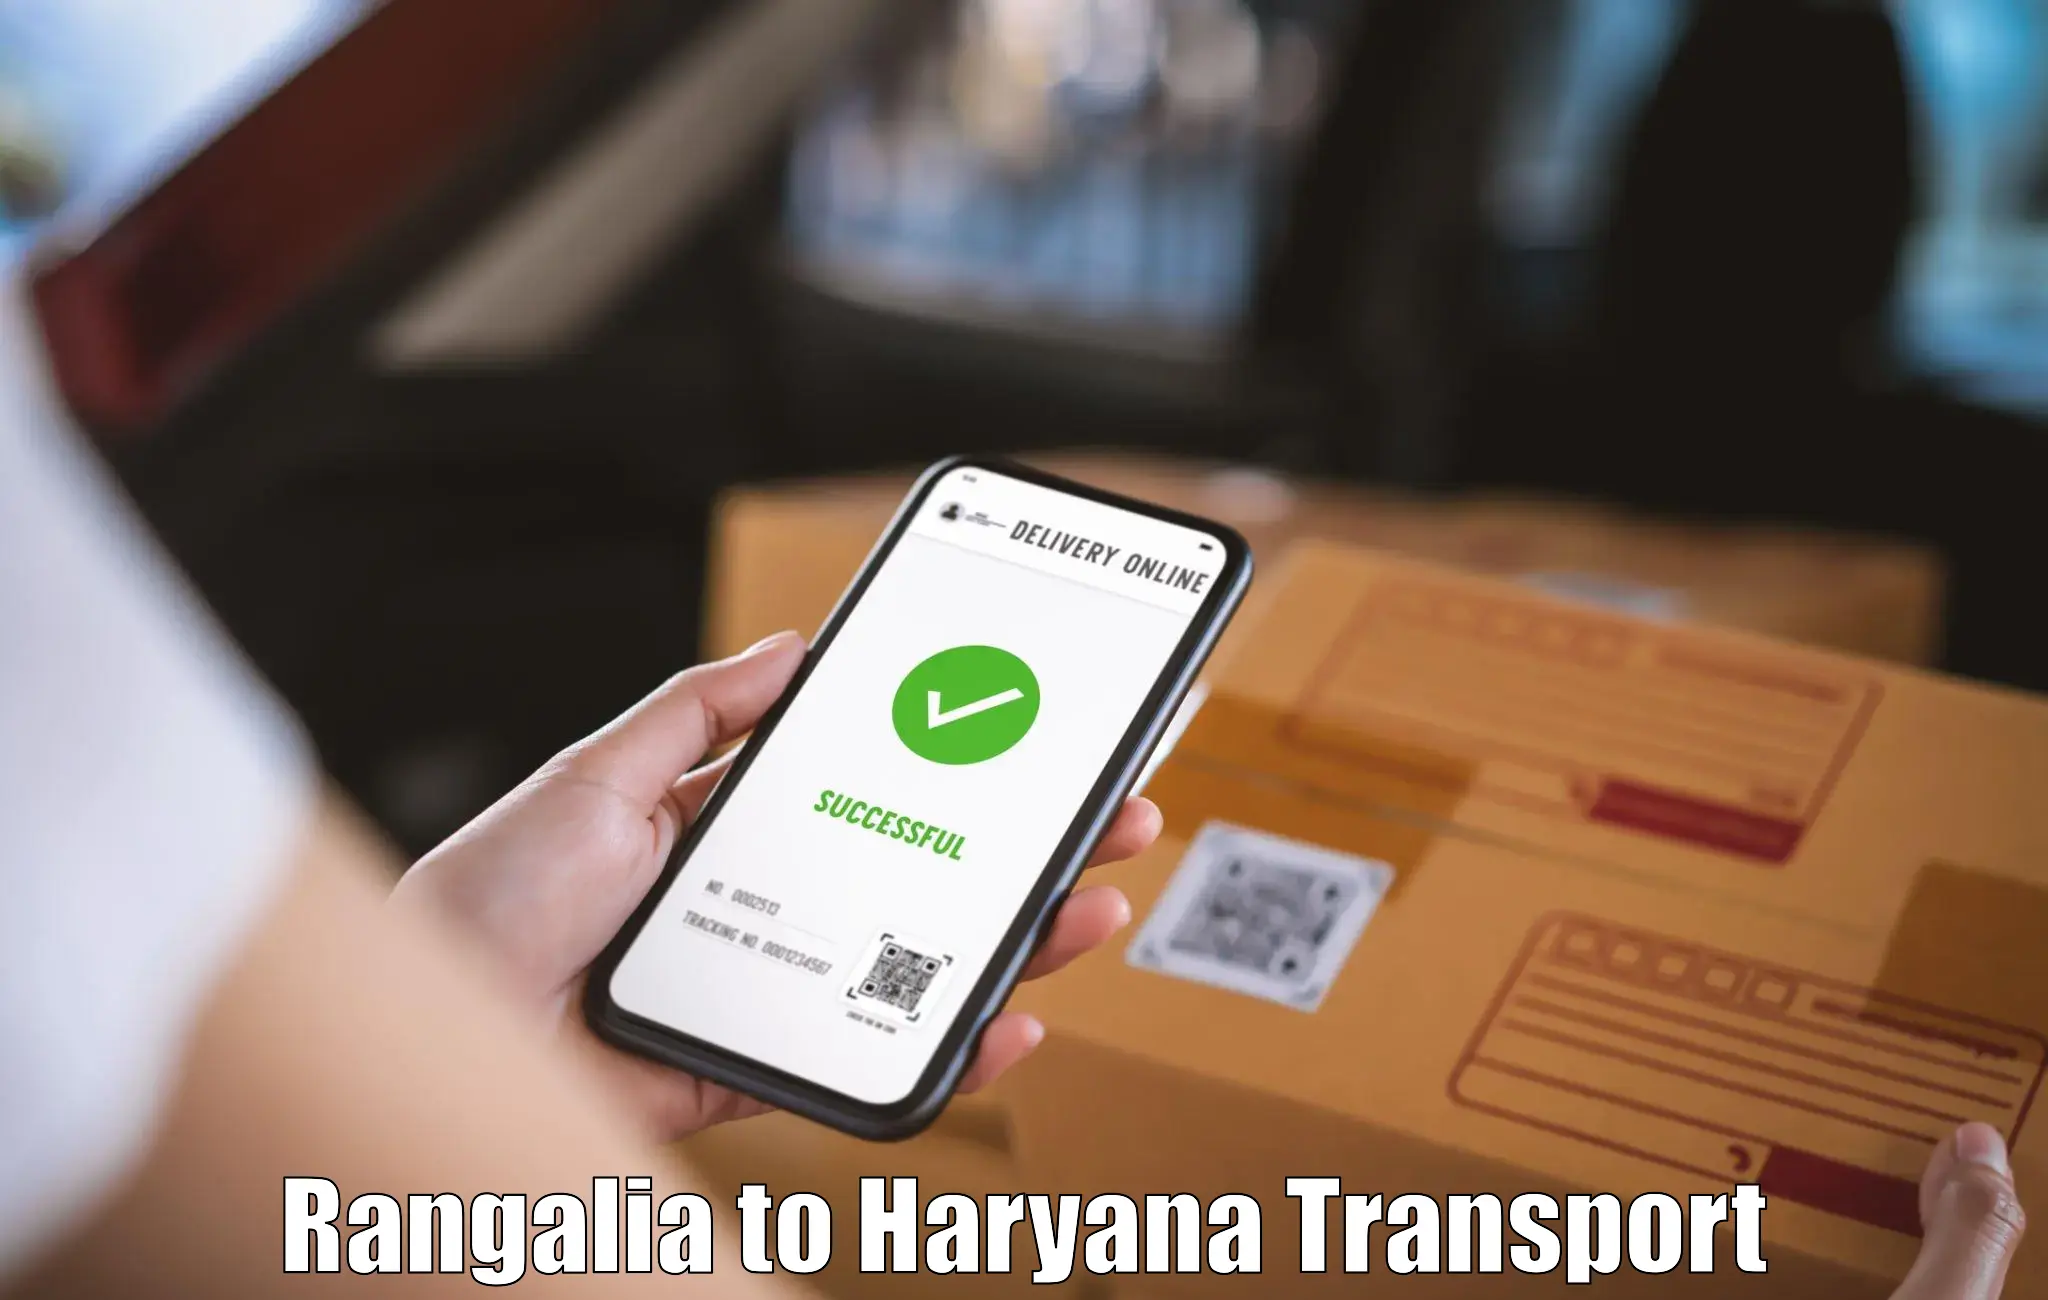 Cargo transportation services Rangalia to Haryana